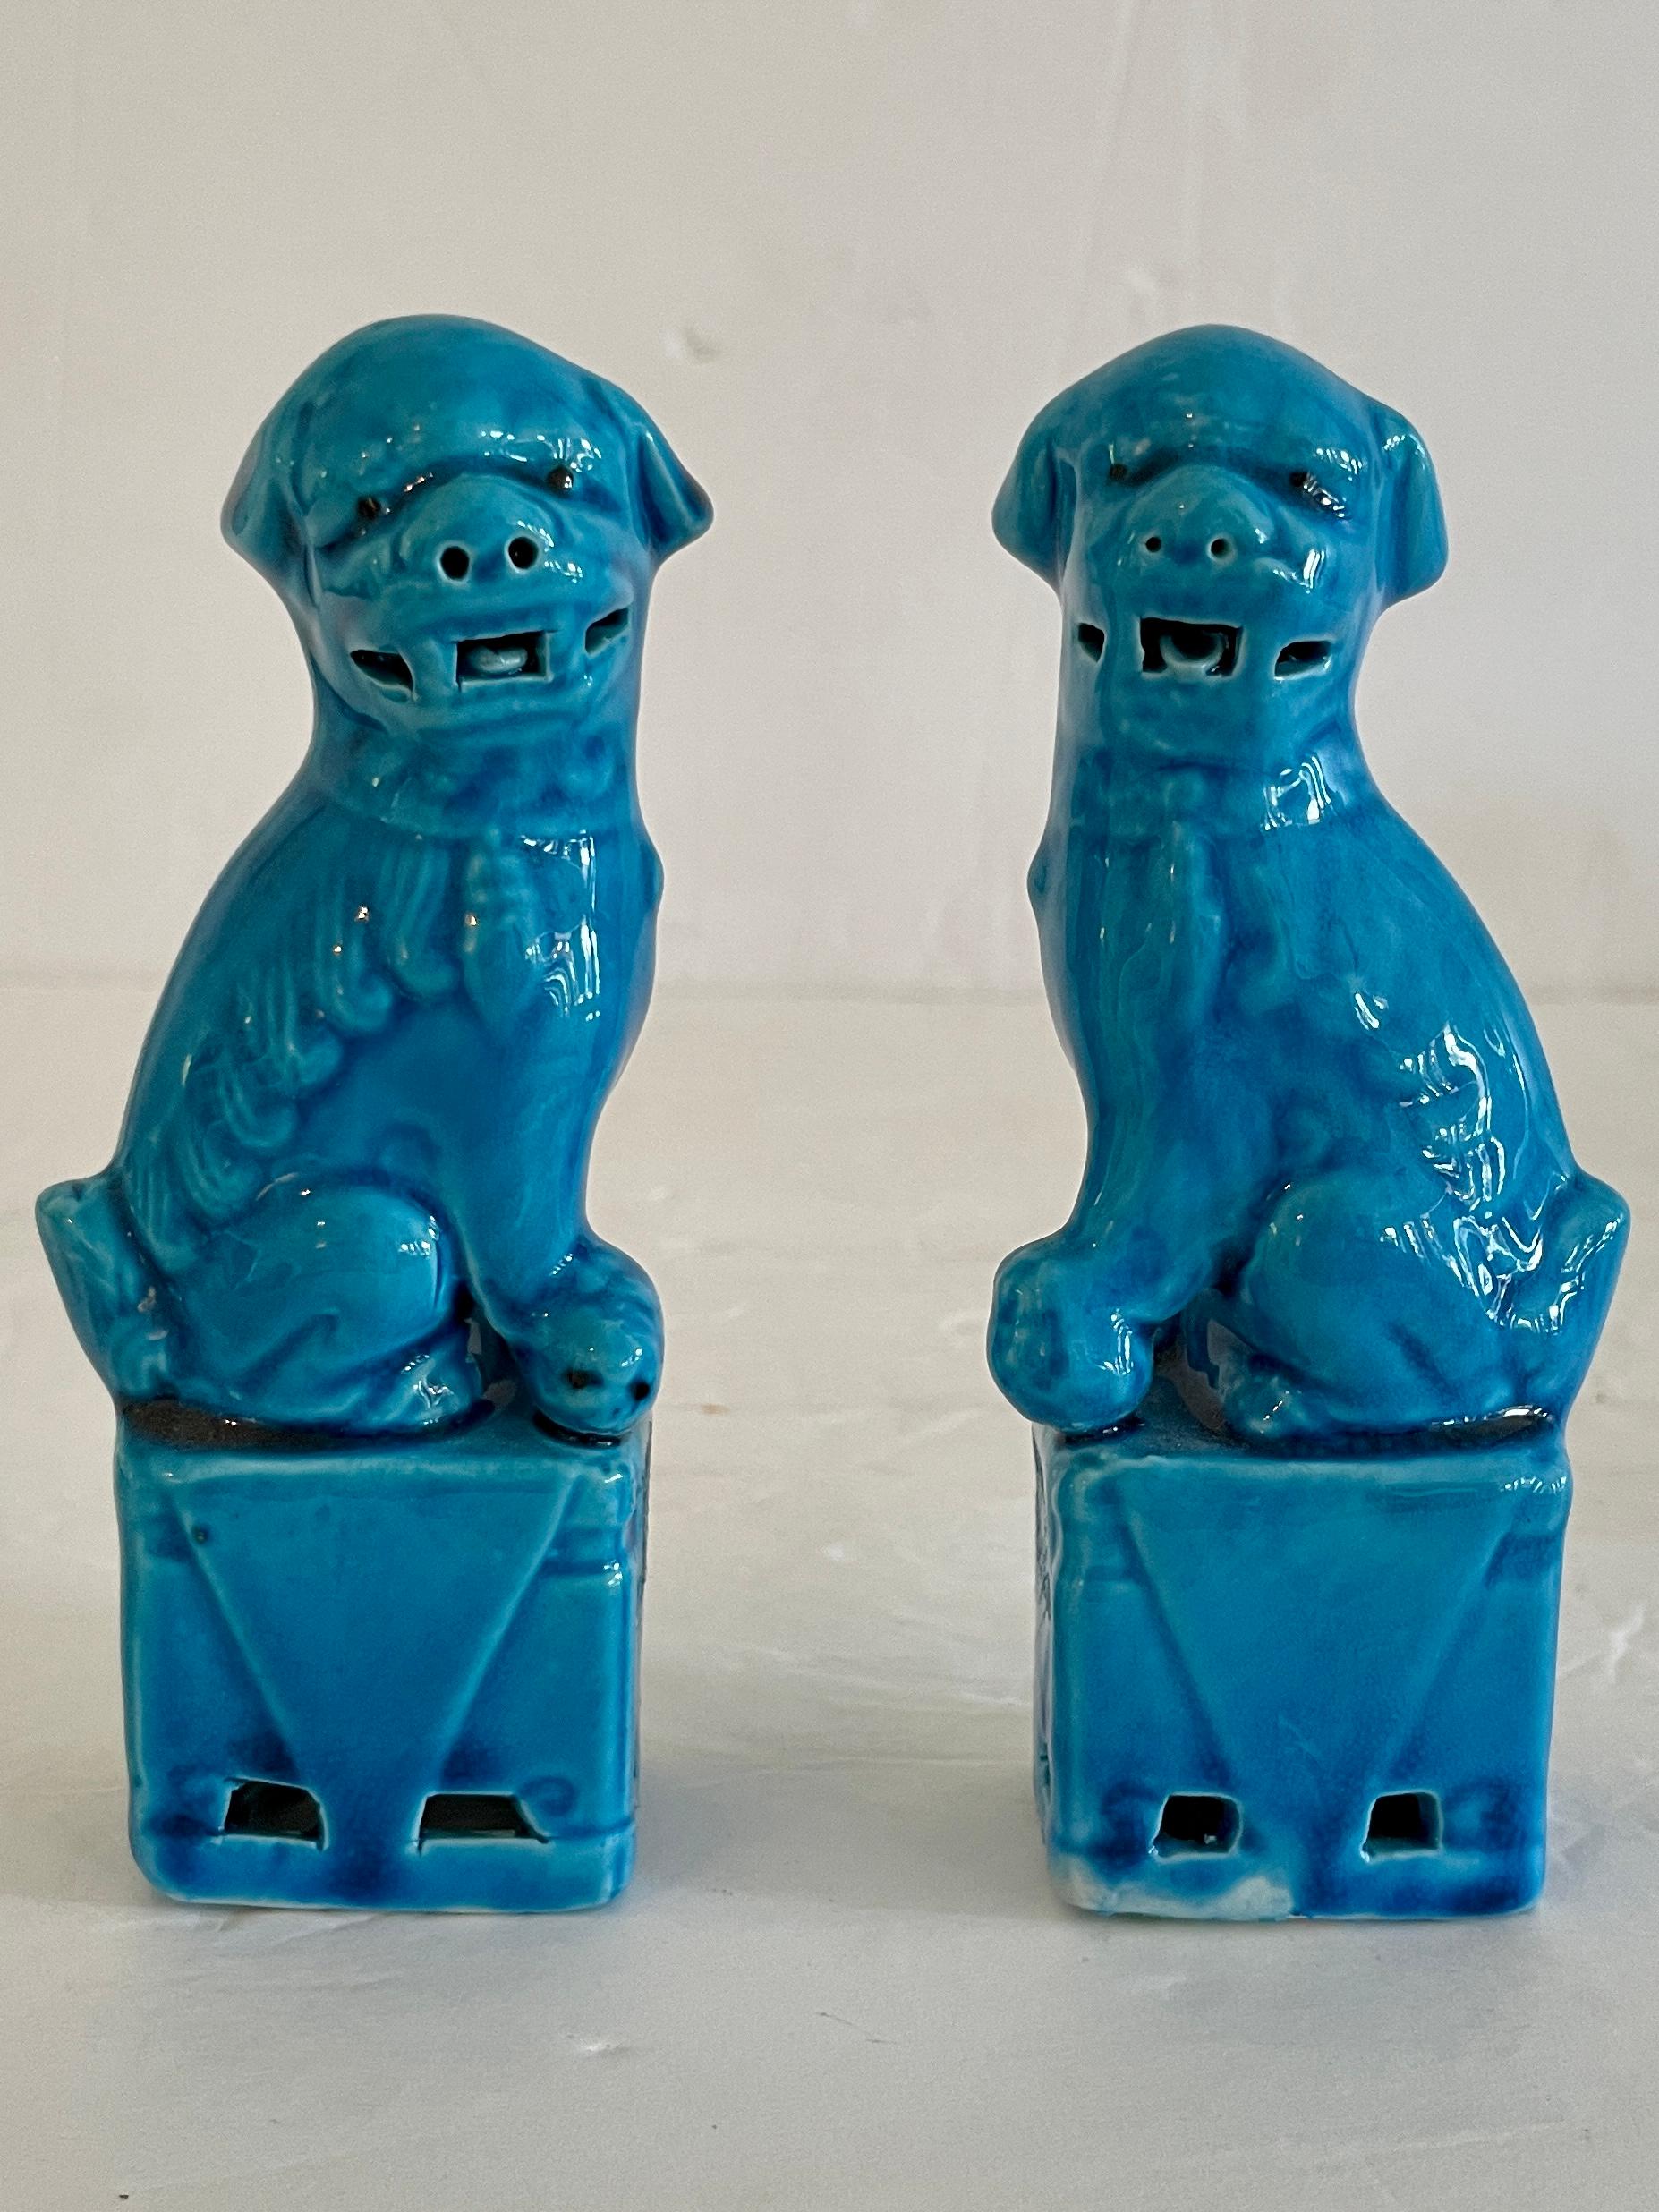 Fabuleuse paire de petits chiens foo en céramique asiatique turquoise avec des figures masculines et féminines. Les détails de la sculpture sont étonnants. Un excellent complément à votre collection de chinoiseries.